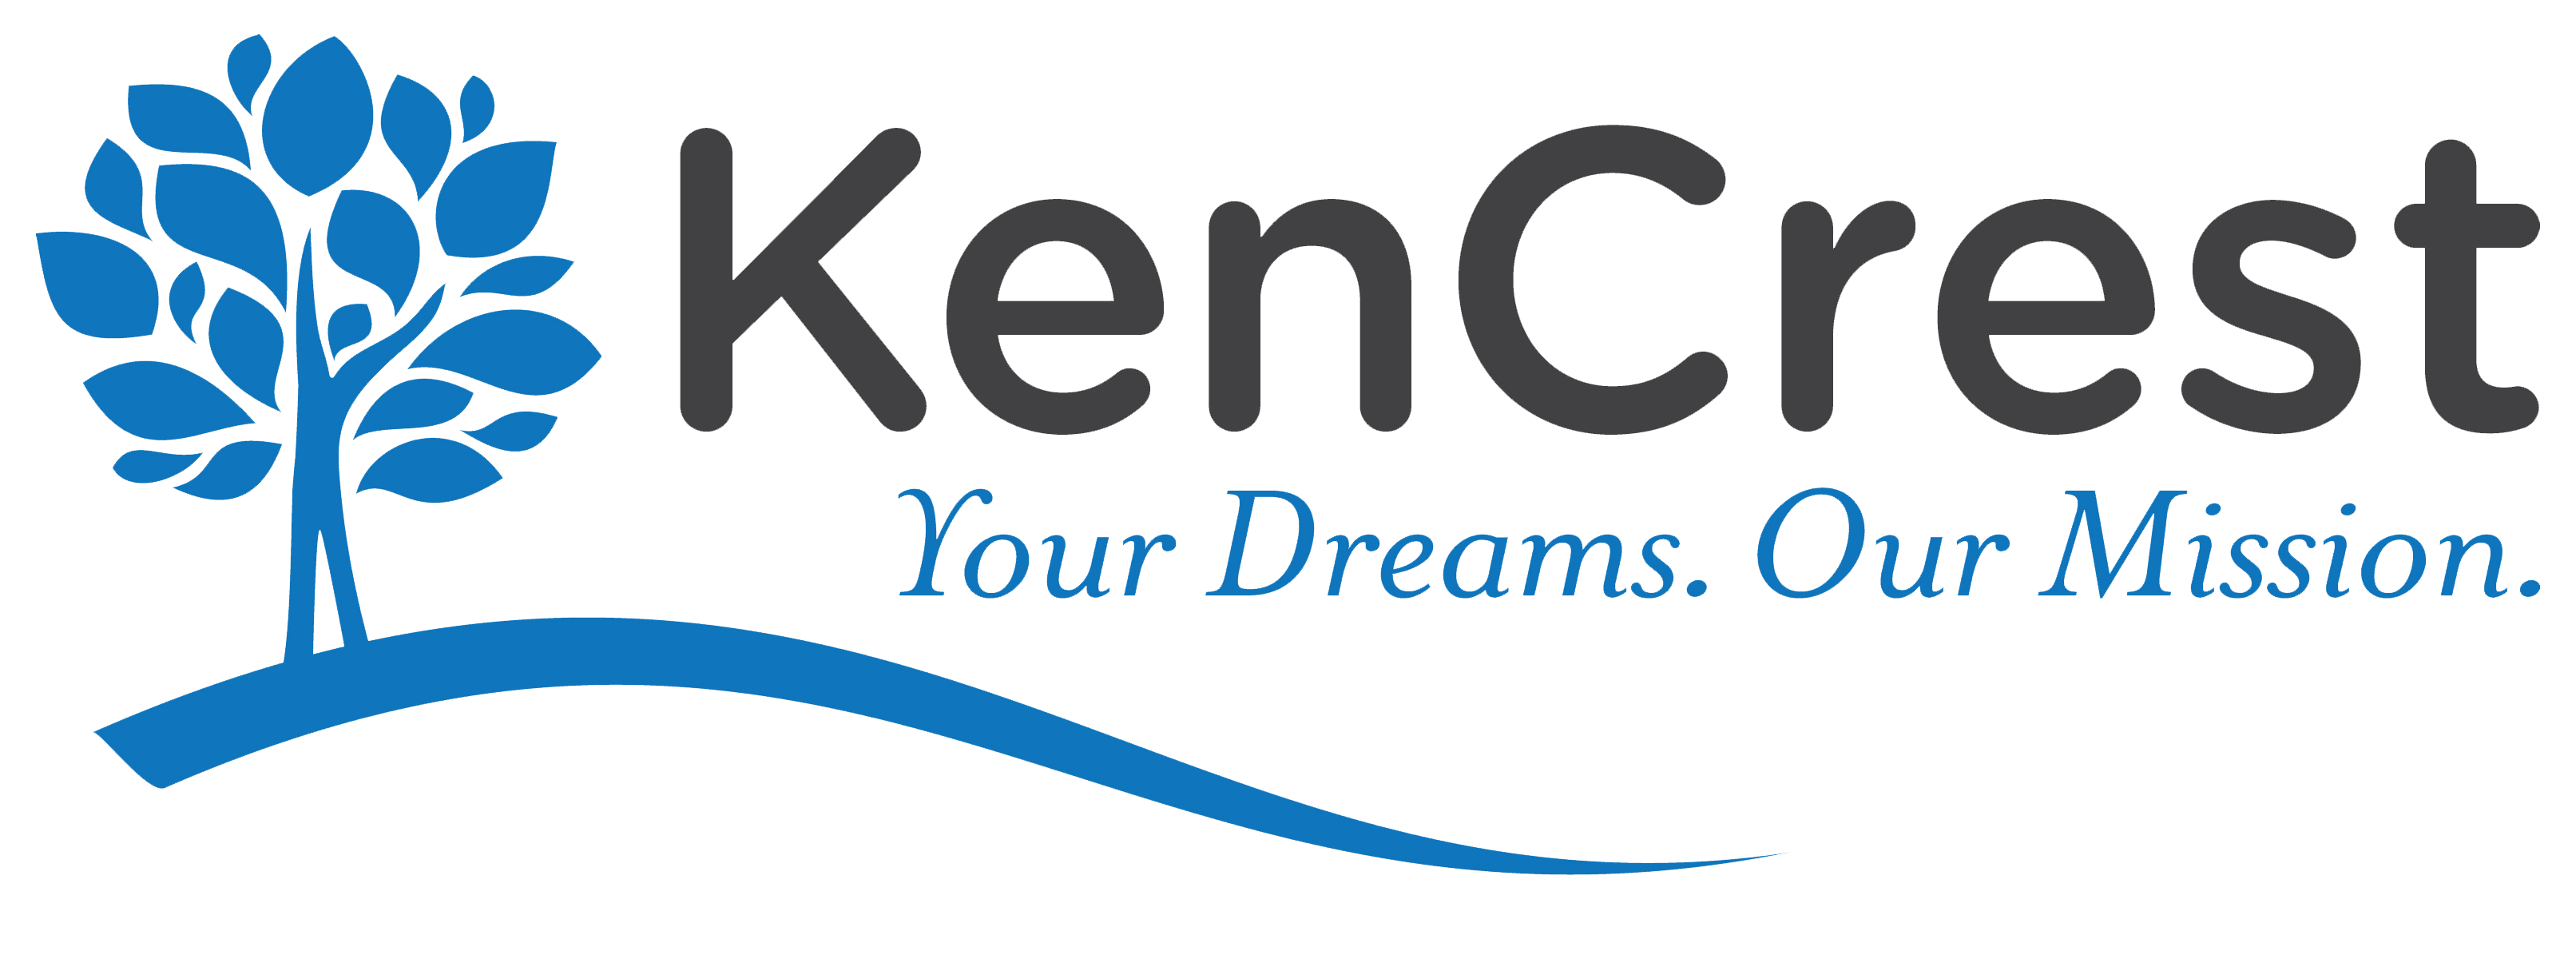 KenCrest logo